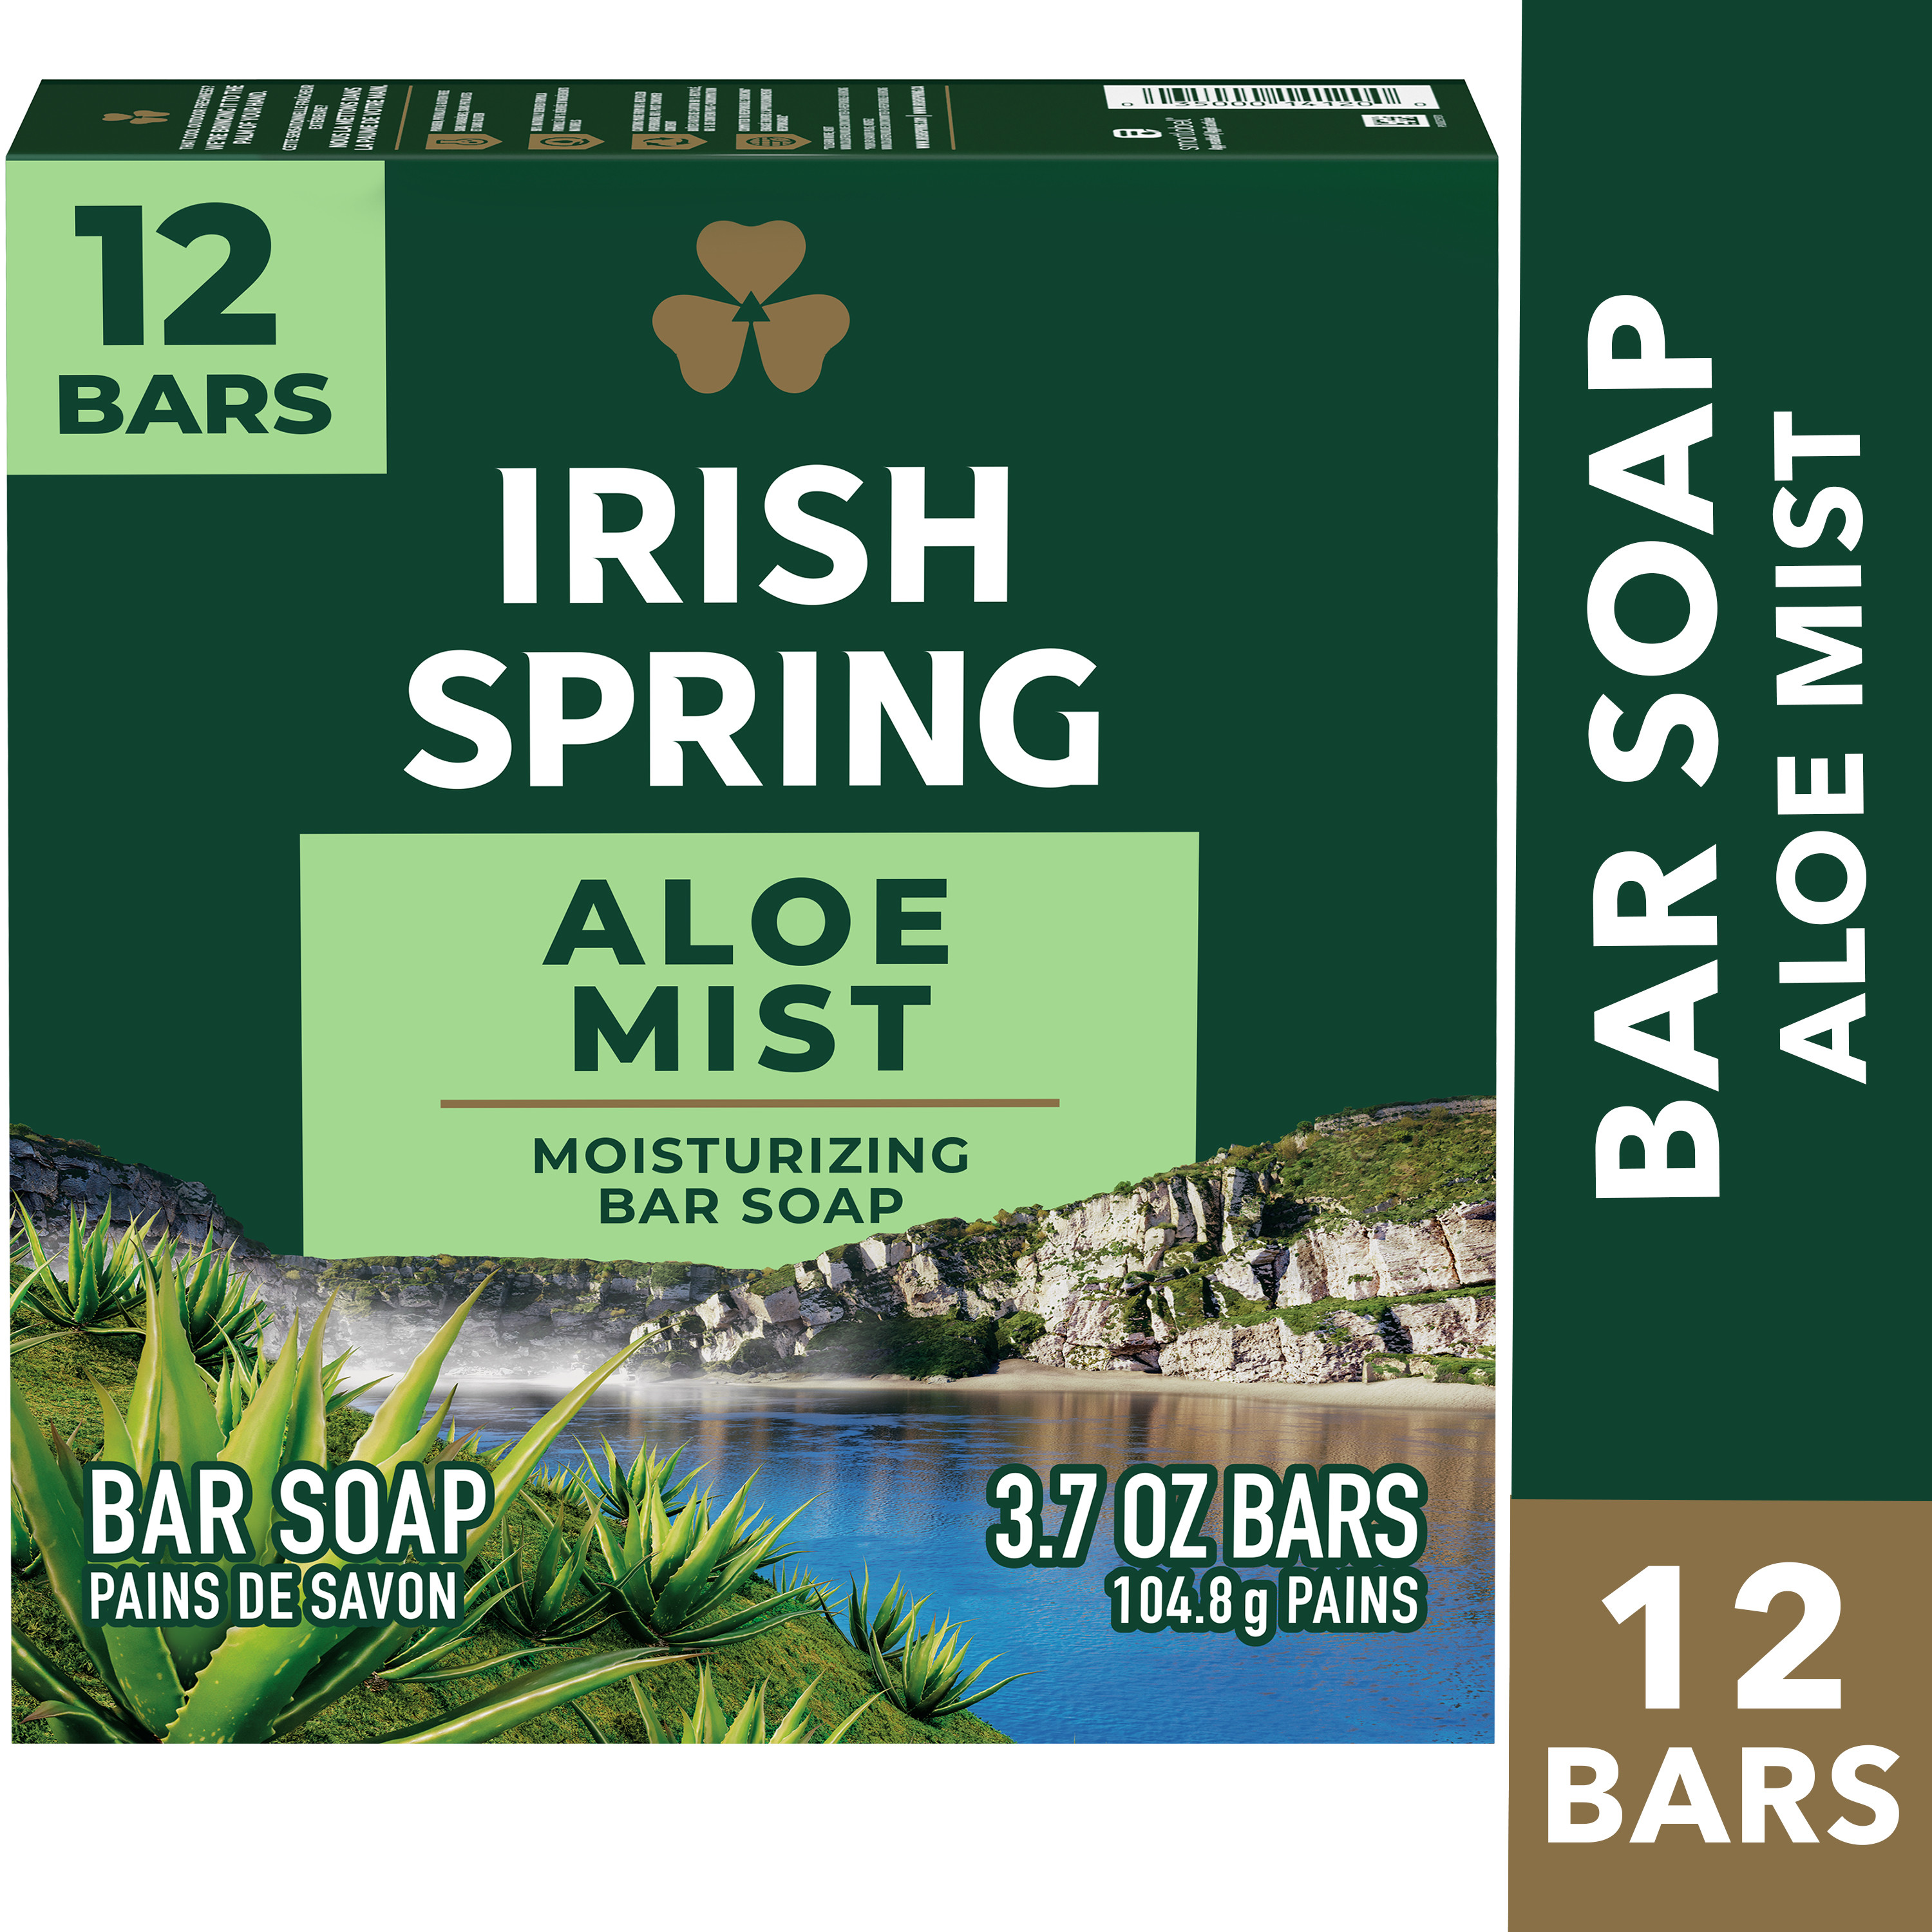 Irish Spring Aloe Mist Deodorant Bar Soap for Men, Feel Fresh All Day, 3.7 oz, 12 Pack - image 3 of 23